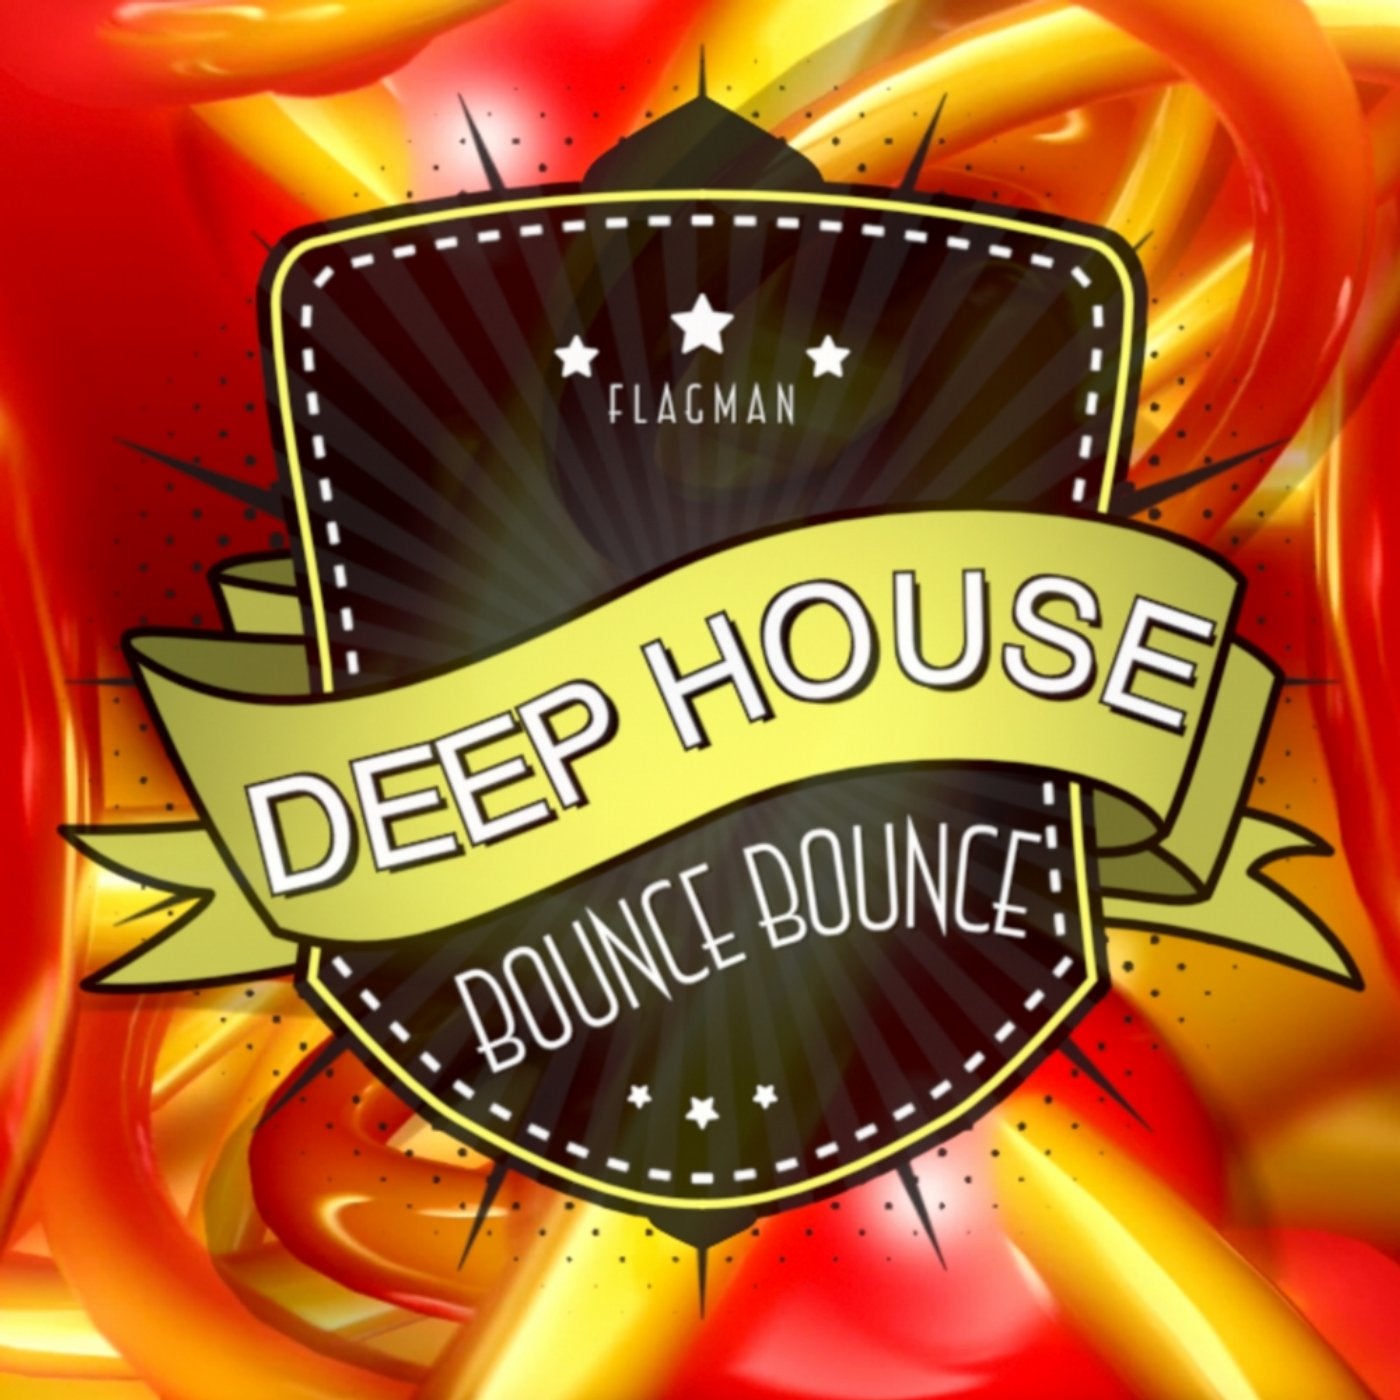 Deep House Bounce Bounce